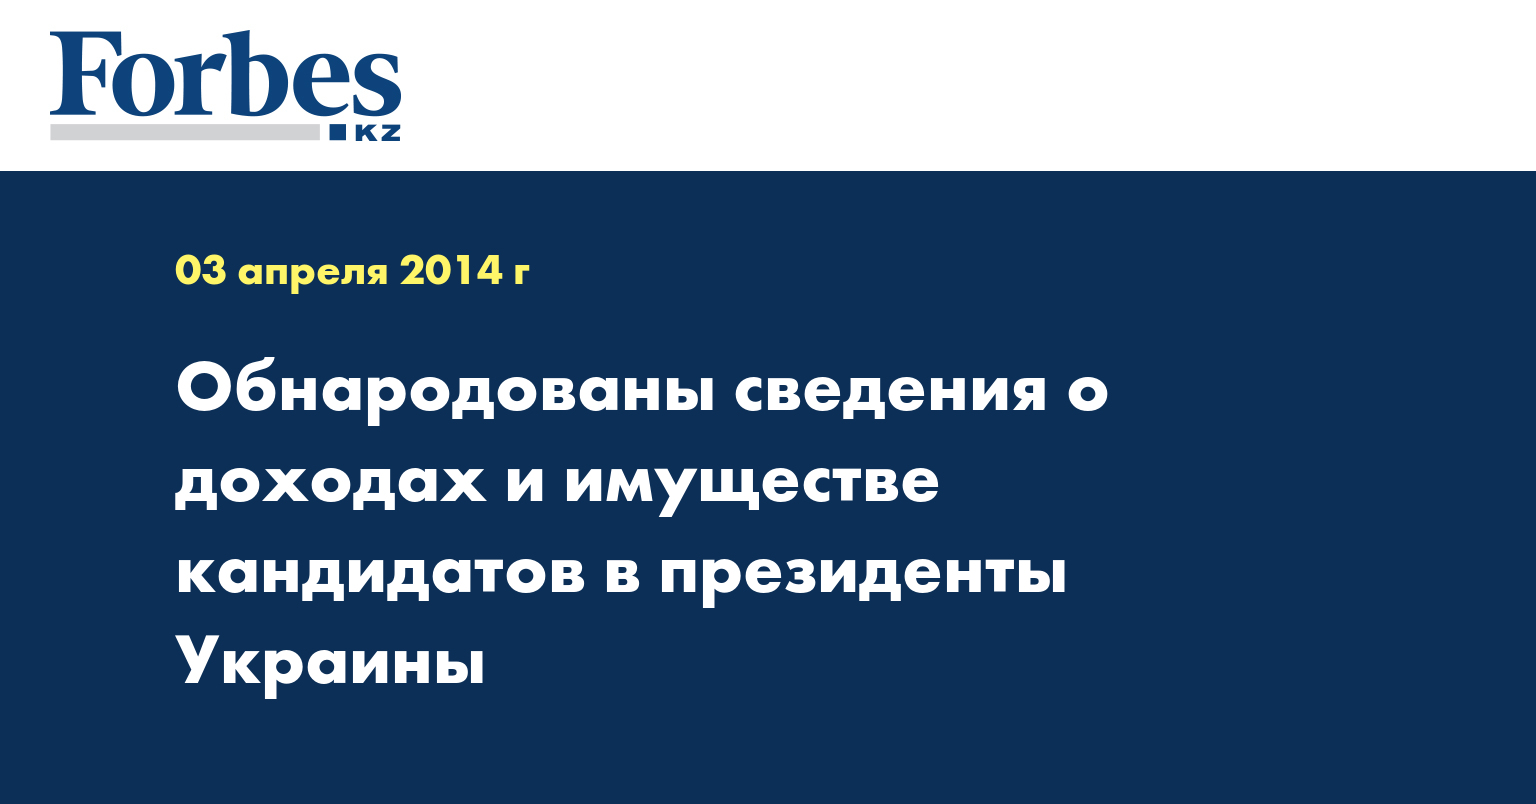 Обнародованы сведения о доходах и имуществе кандидатов в президенты Украины 